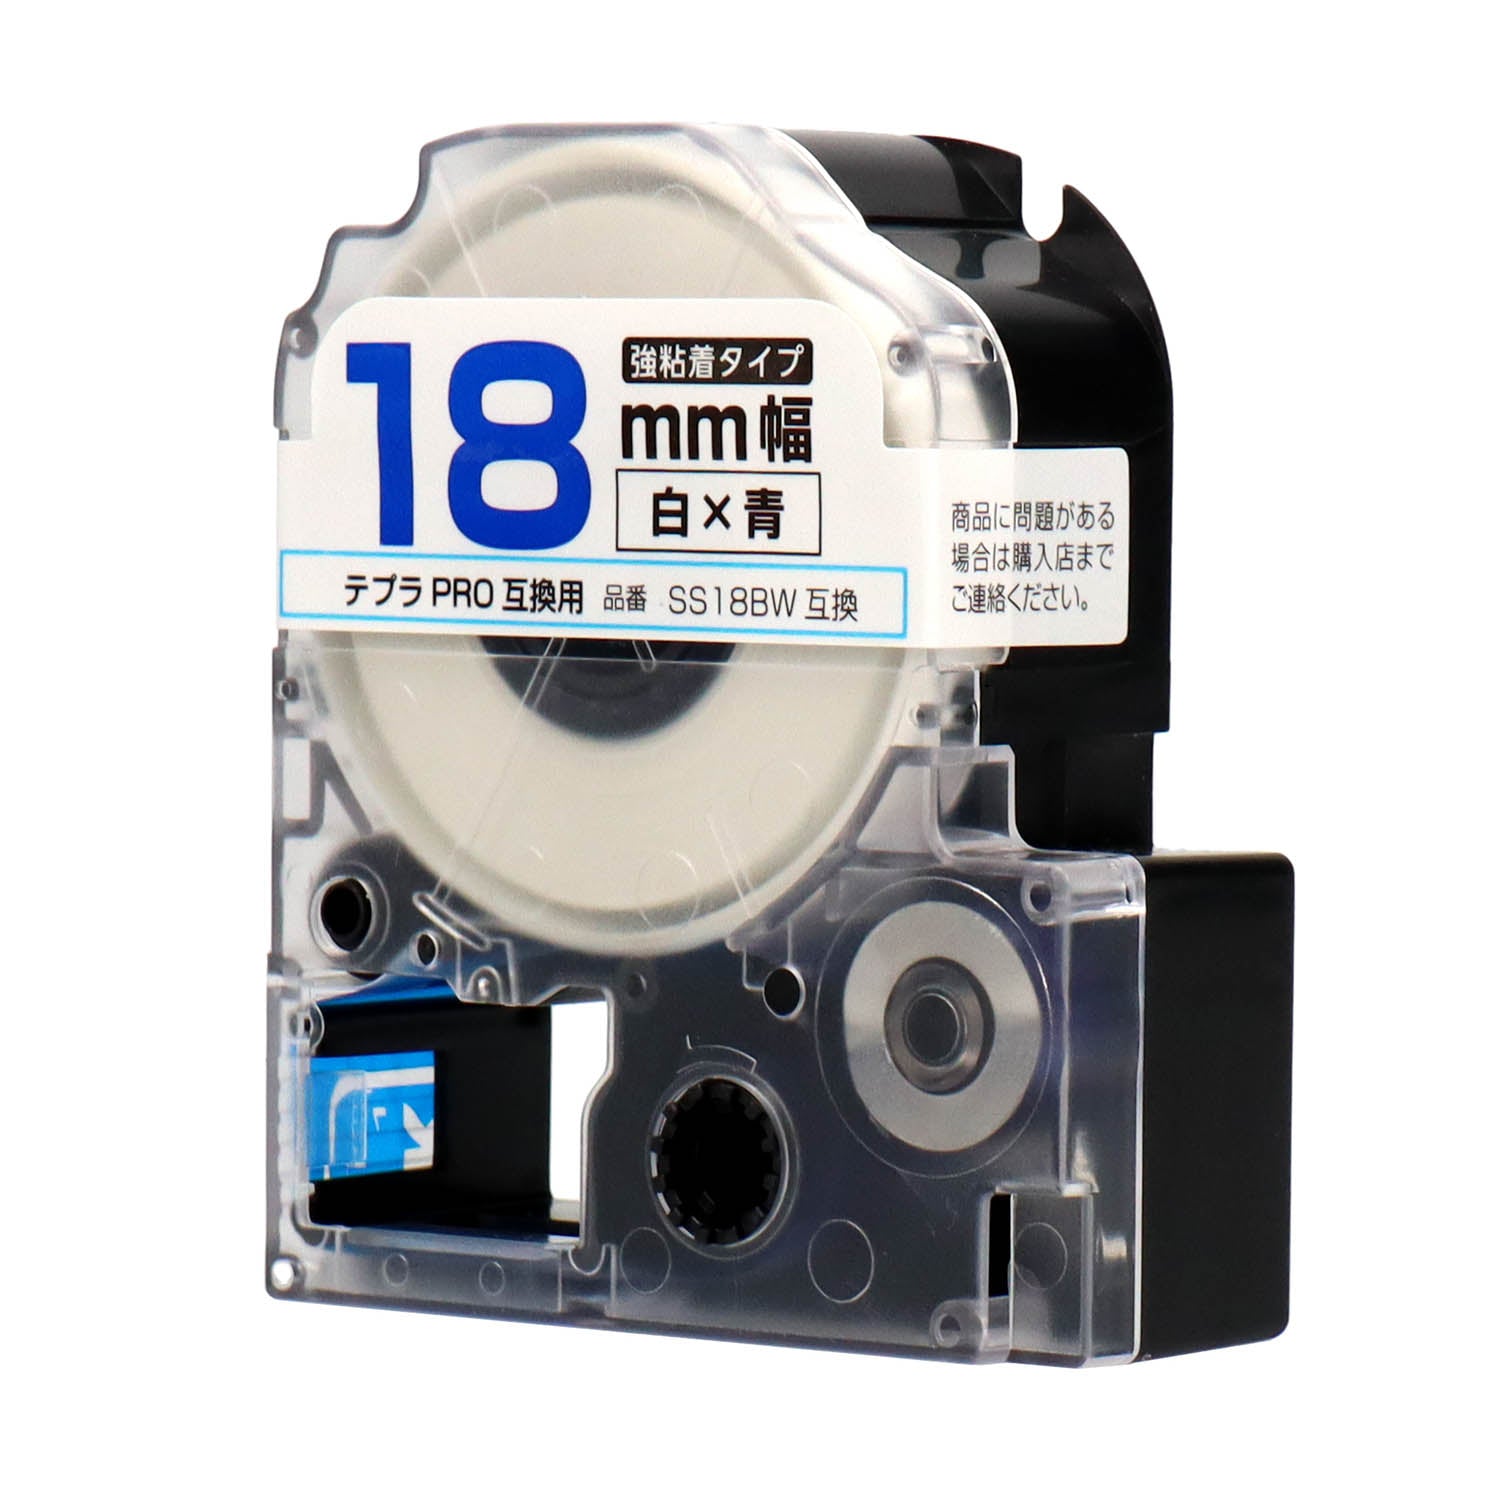 テプラPRO用互換テープカートリッジ 白×青文字 18mm